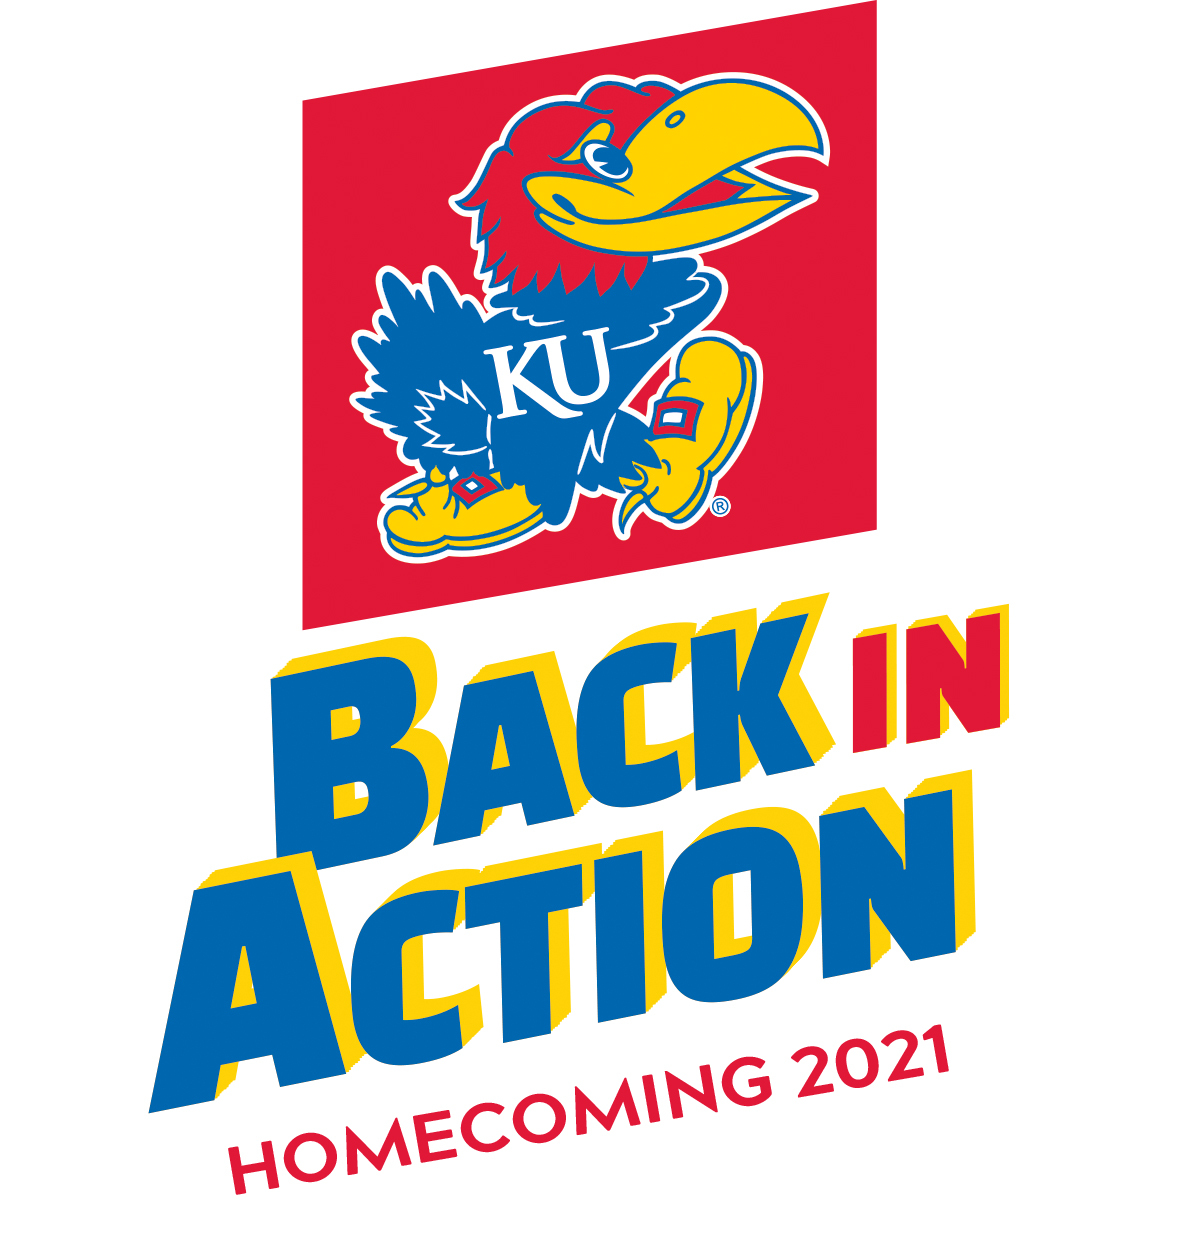 Homecoming 2021 logo